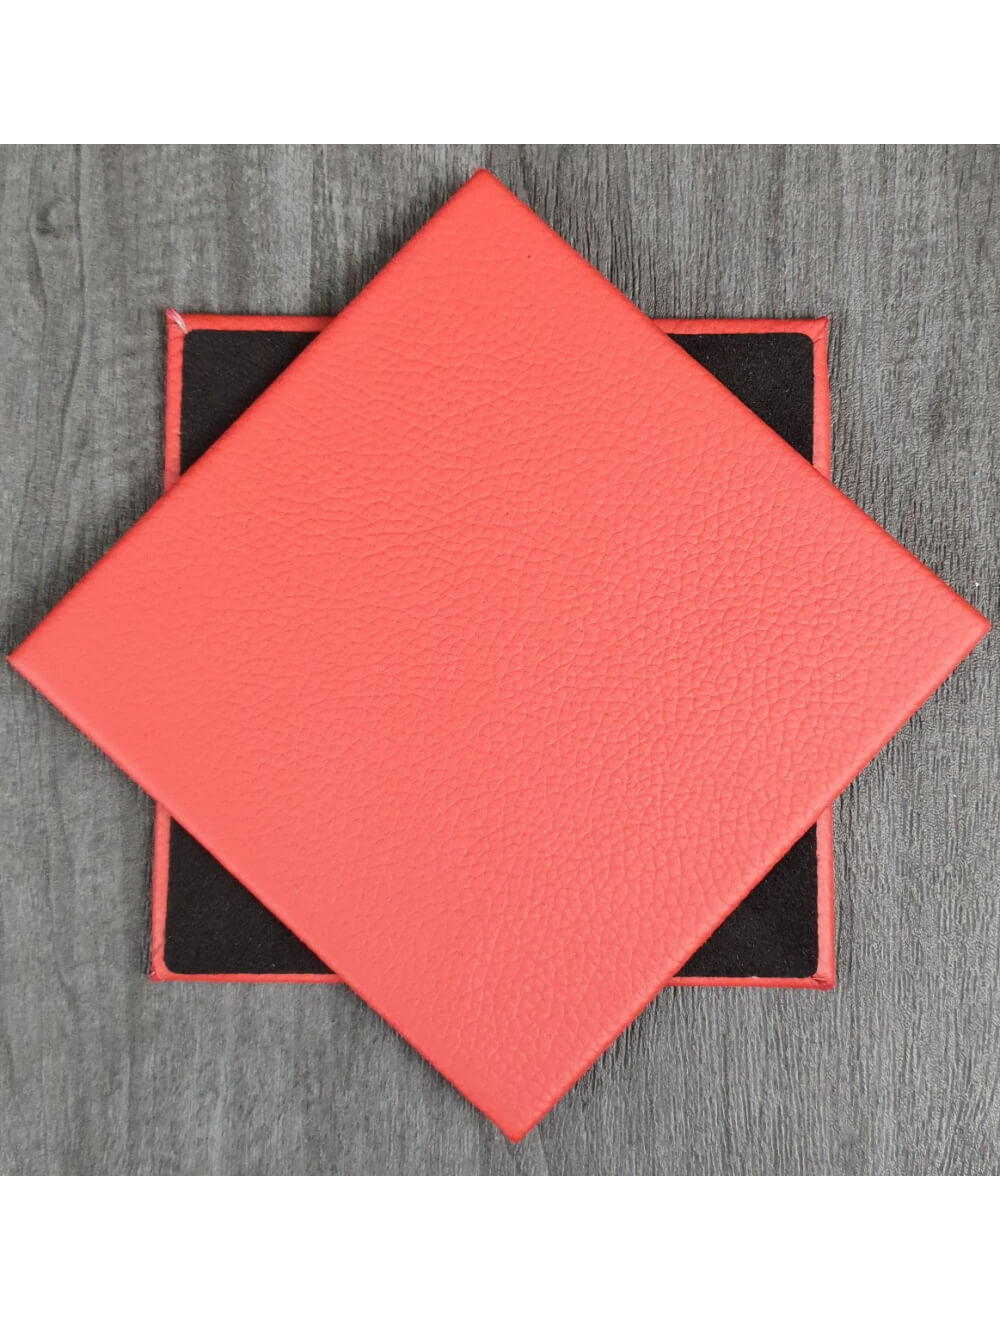 Poppy Shelly Leather Coaster- 10 cm Sq (articolo di vendita)